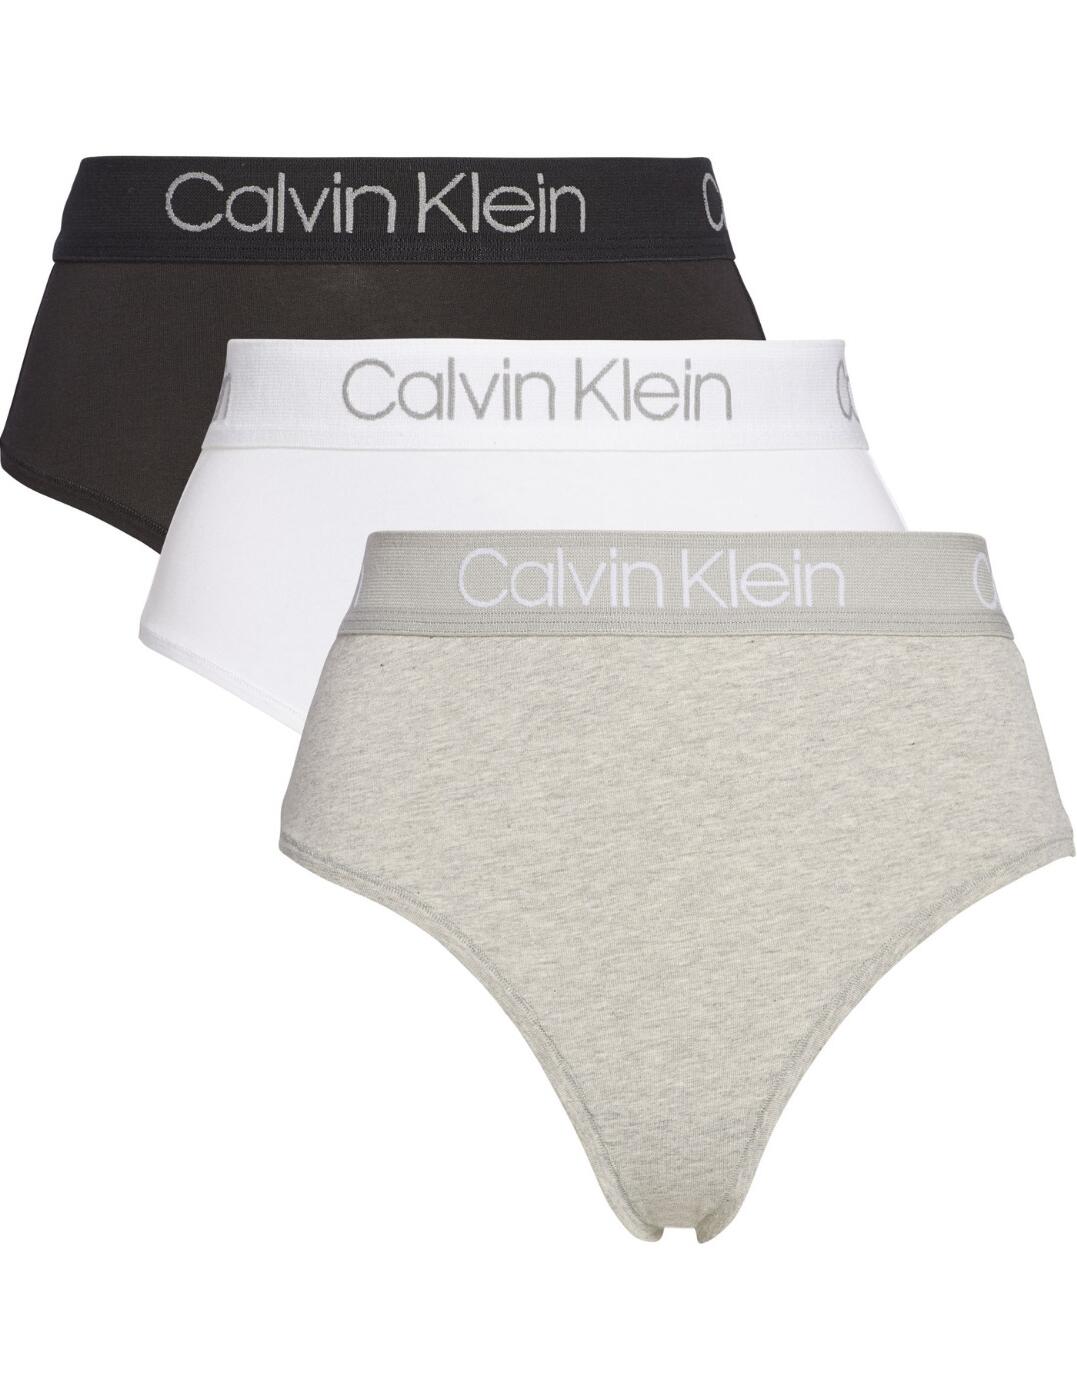 Briefs Calvin Klein 3Pk High Waist Bikini